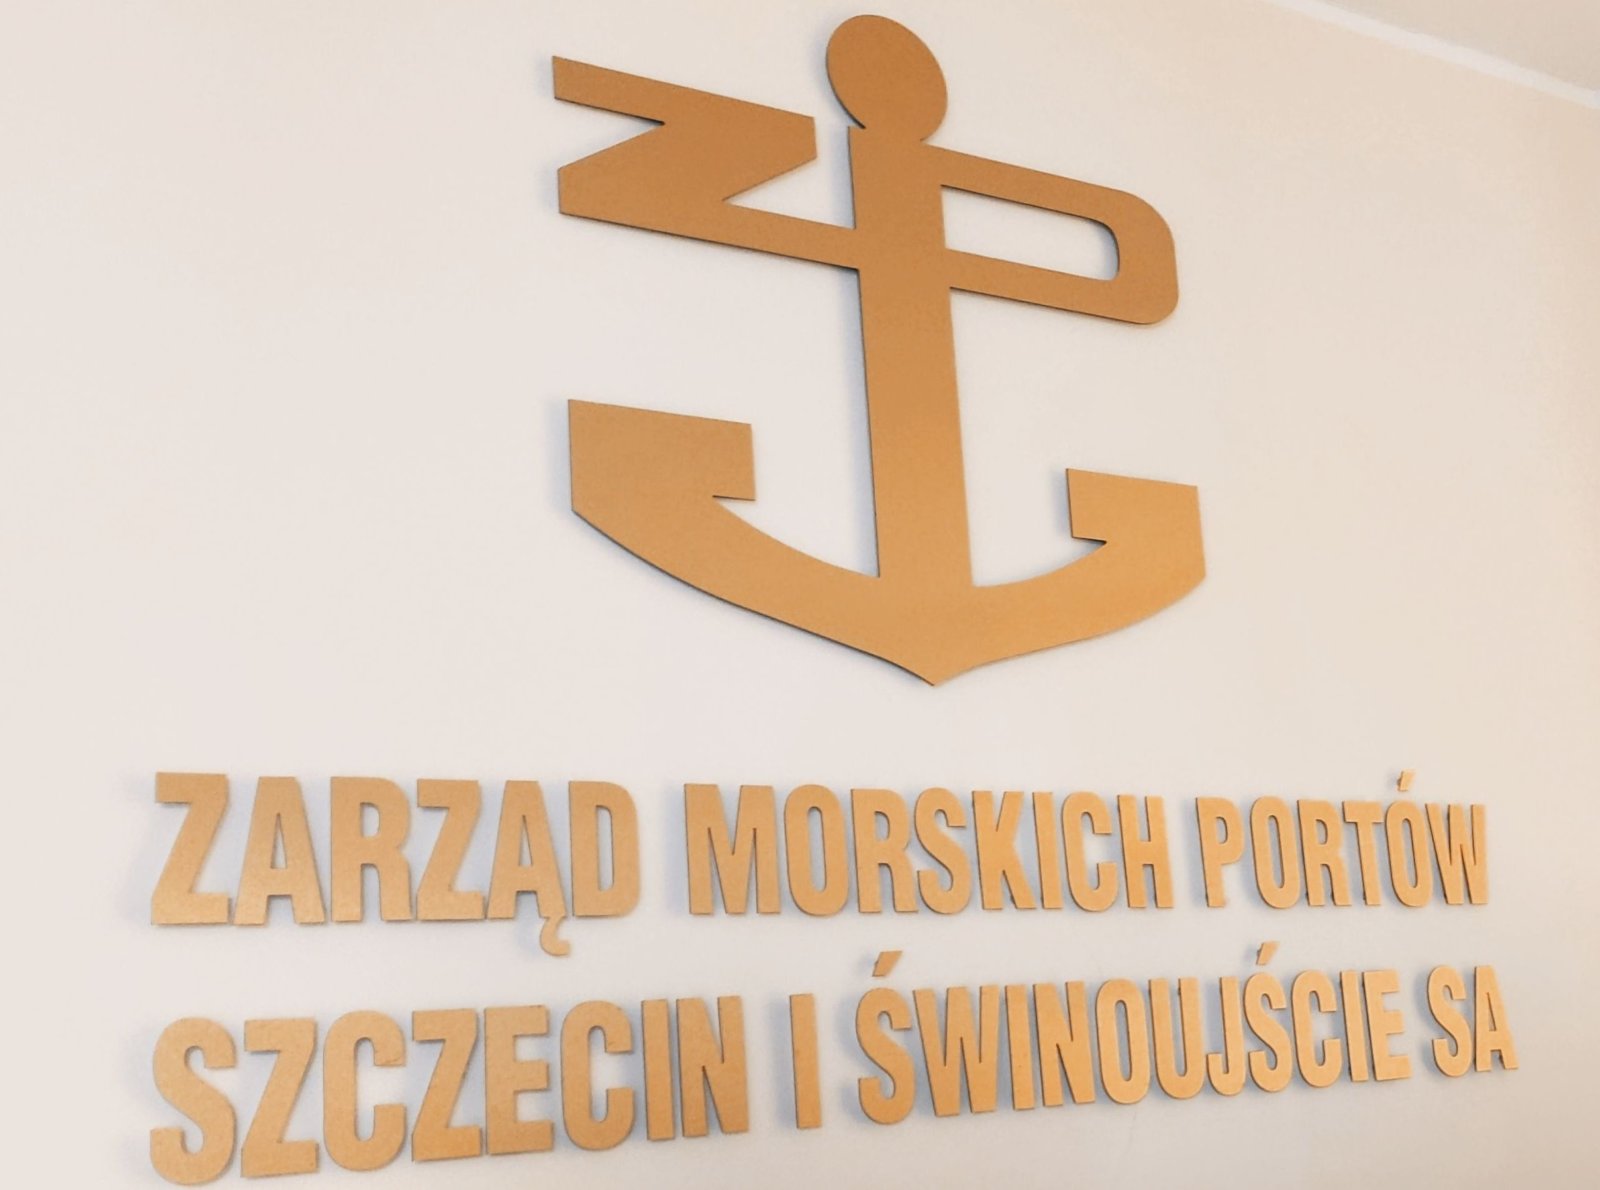 Zarząd Morskich Portów Szczecin i Świnoujście. Apel do posiadaczy papierowych akcji spółki.